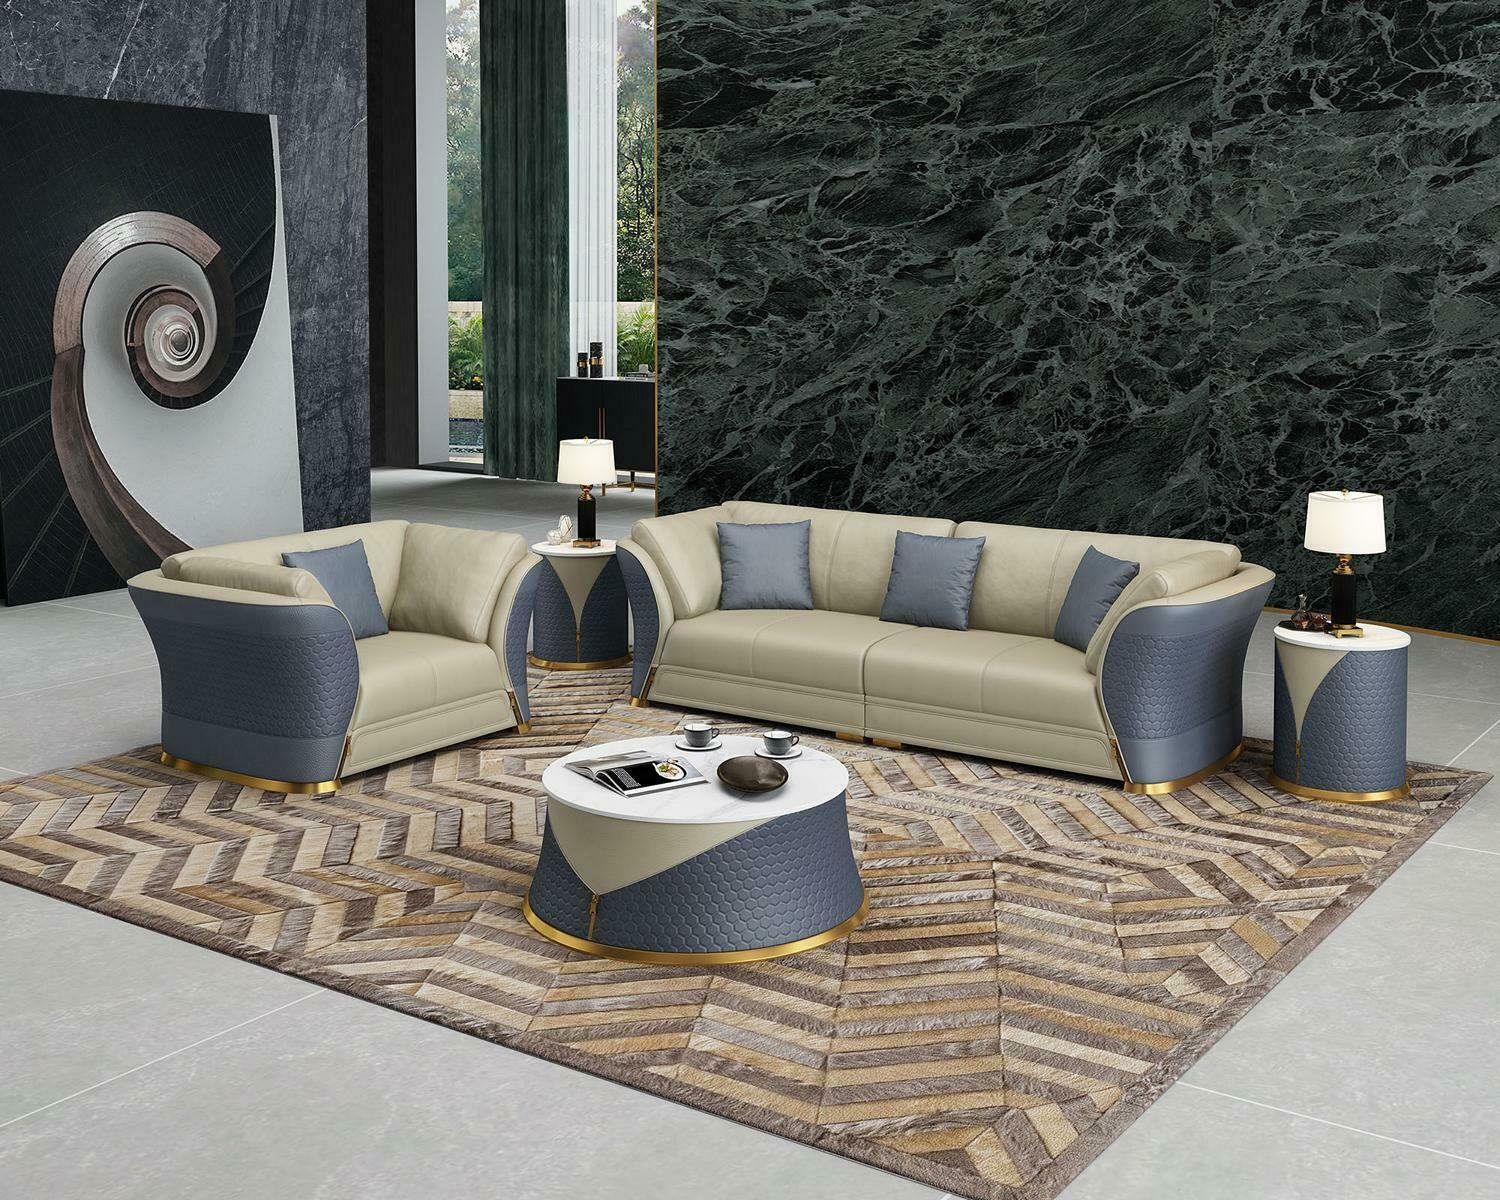 JVmoebel Sofa Moderne Sofagarnitur 4+1 Sitzer Luxus Möbel Wohnlandschaft Neu, Made in Europe Blau/Beige